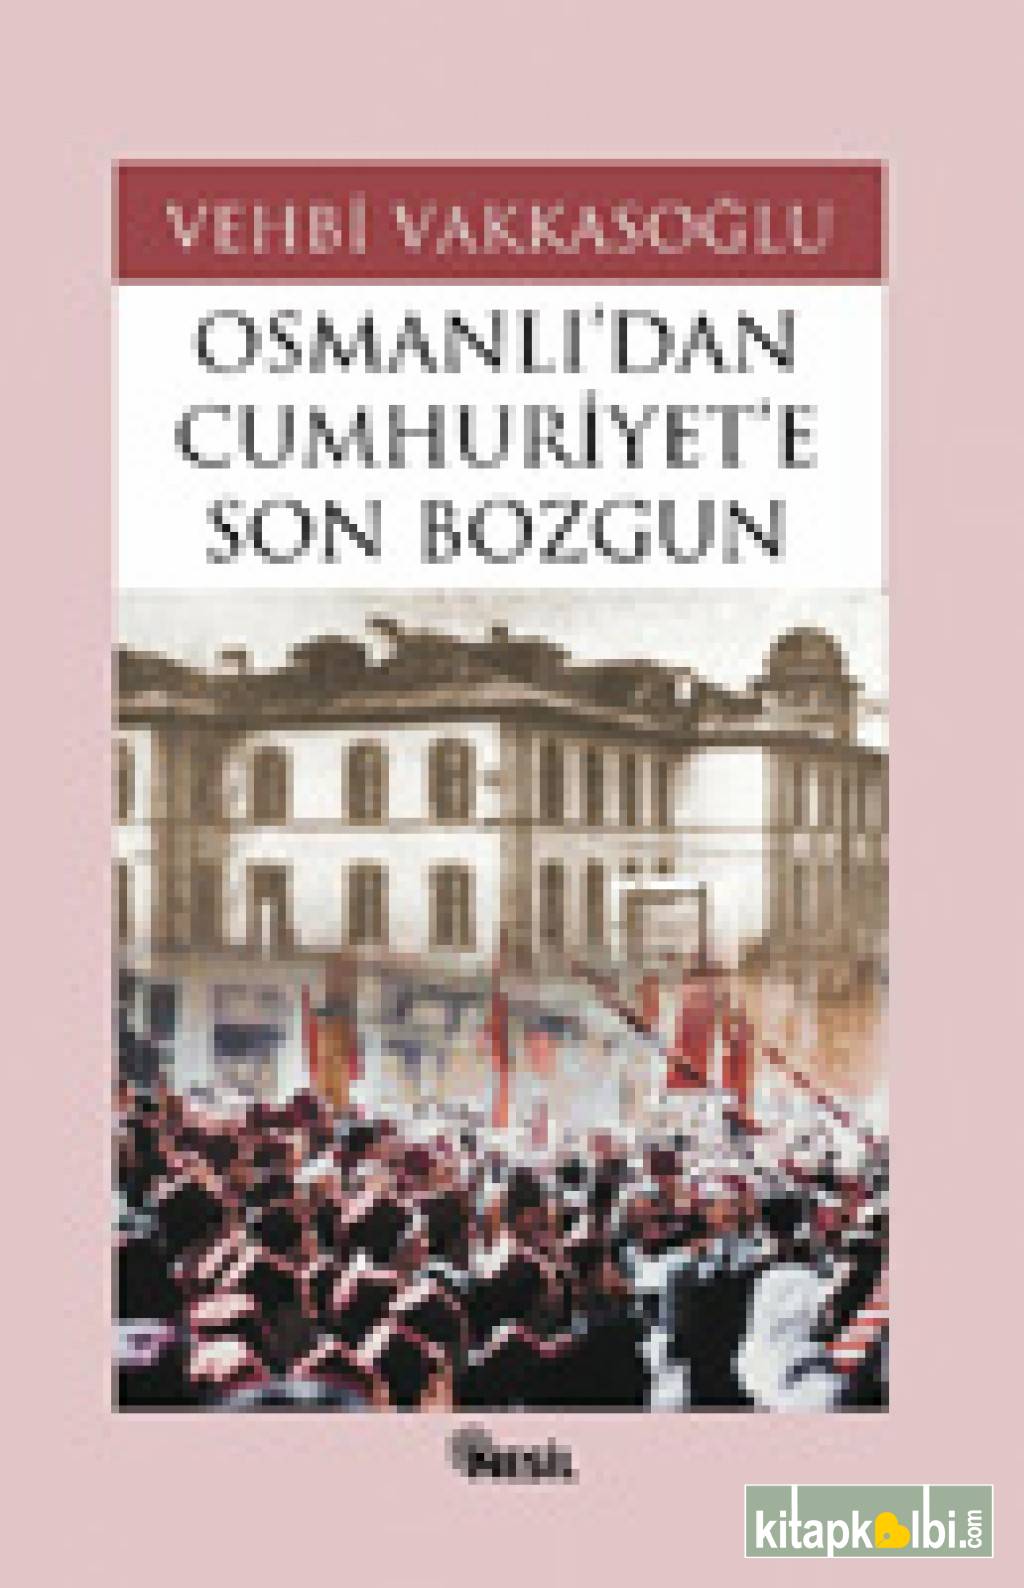 Osmanlıdan Cumhuriyete Son Bozgun